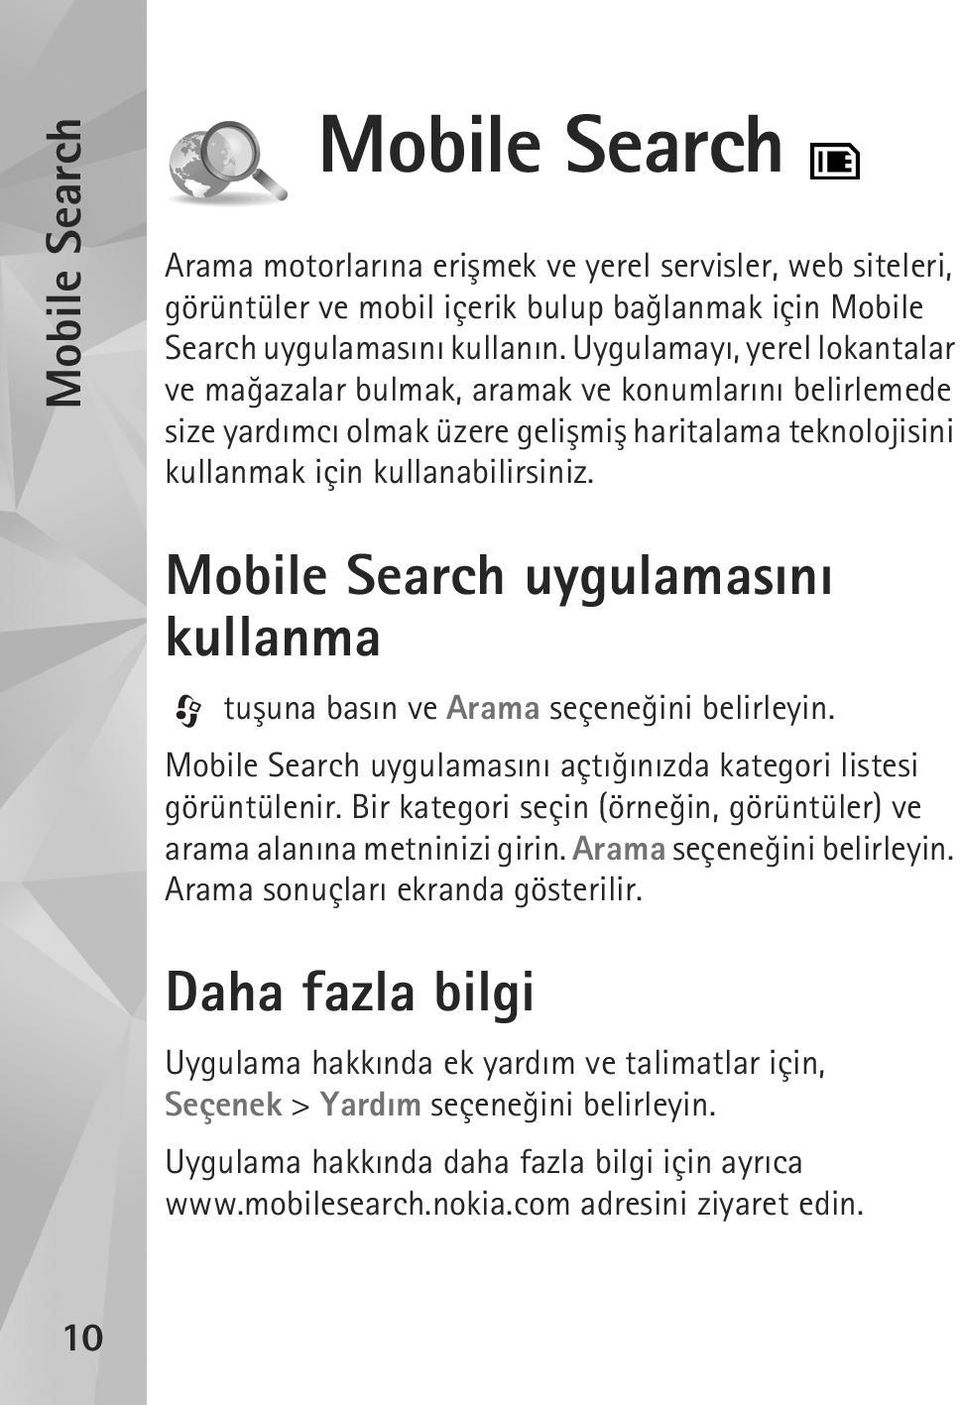 Mobile Search uygulamasýný kullanma tuþuna basýn ve Arama seçeneðini belirleyin. Mobile Search uygulamasýný açtýðýnýzda kategori listesi görüntülenir.